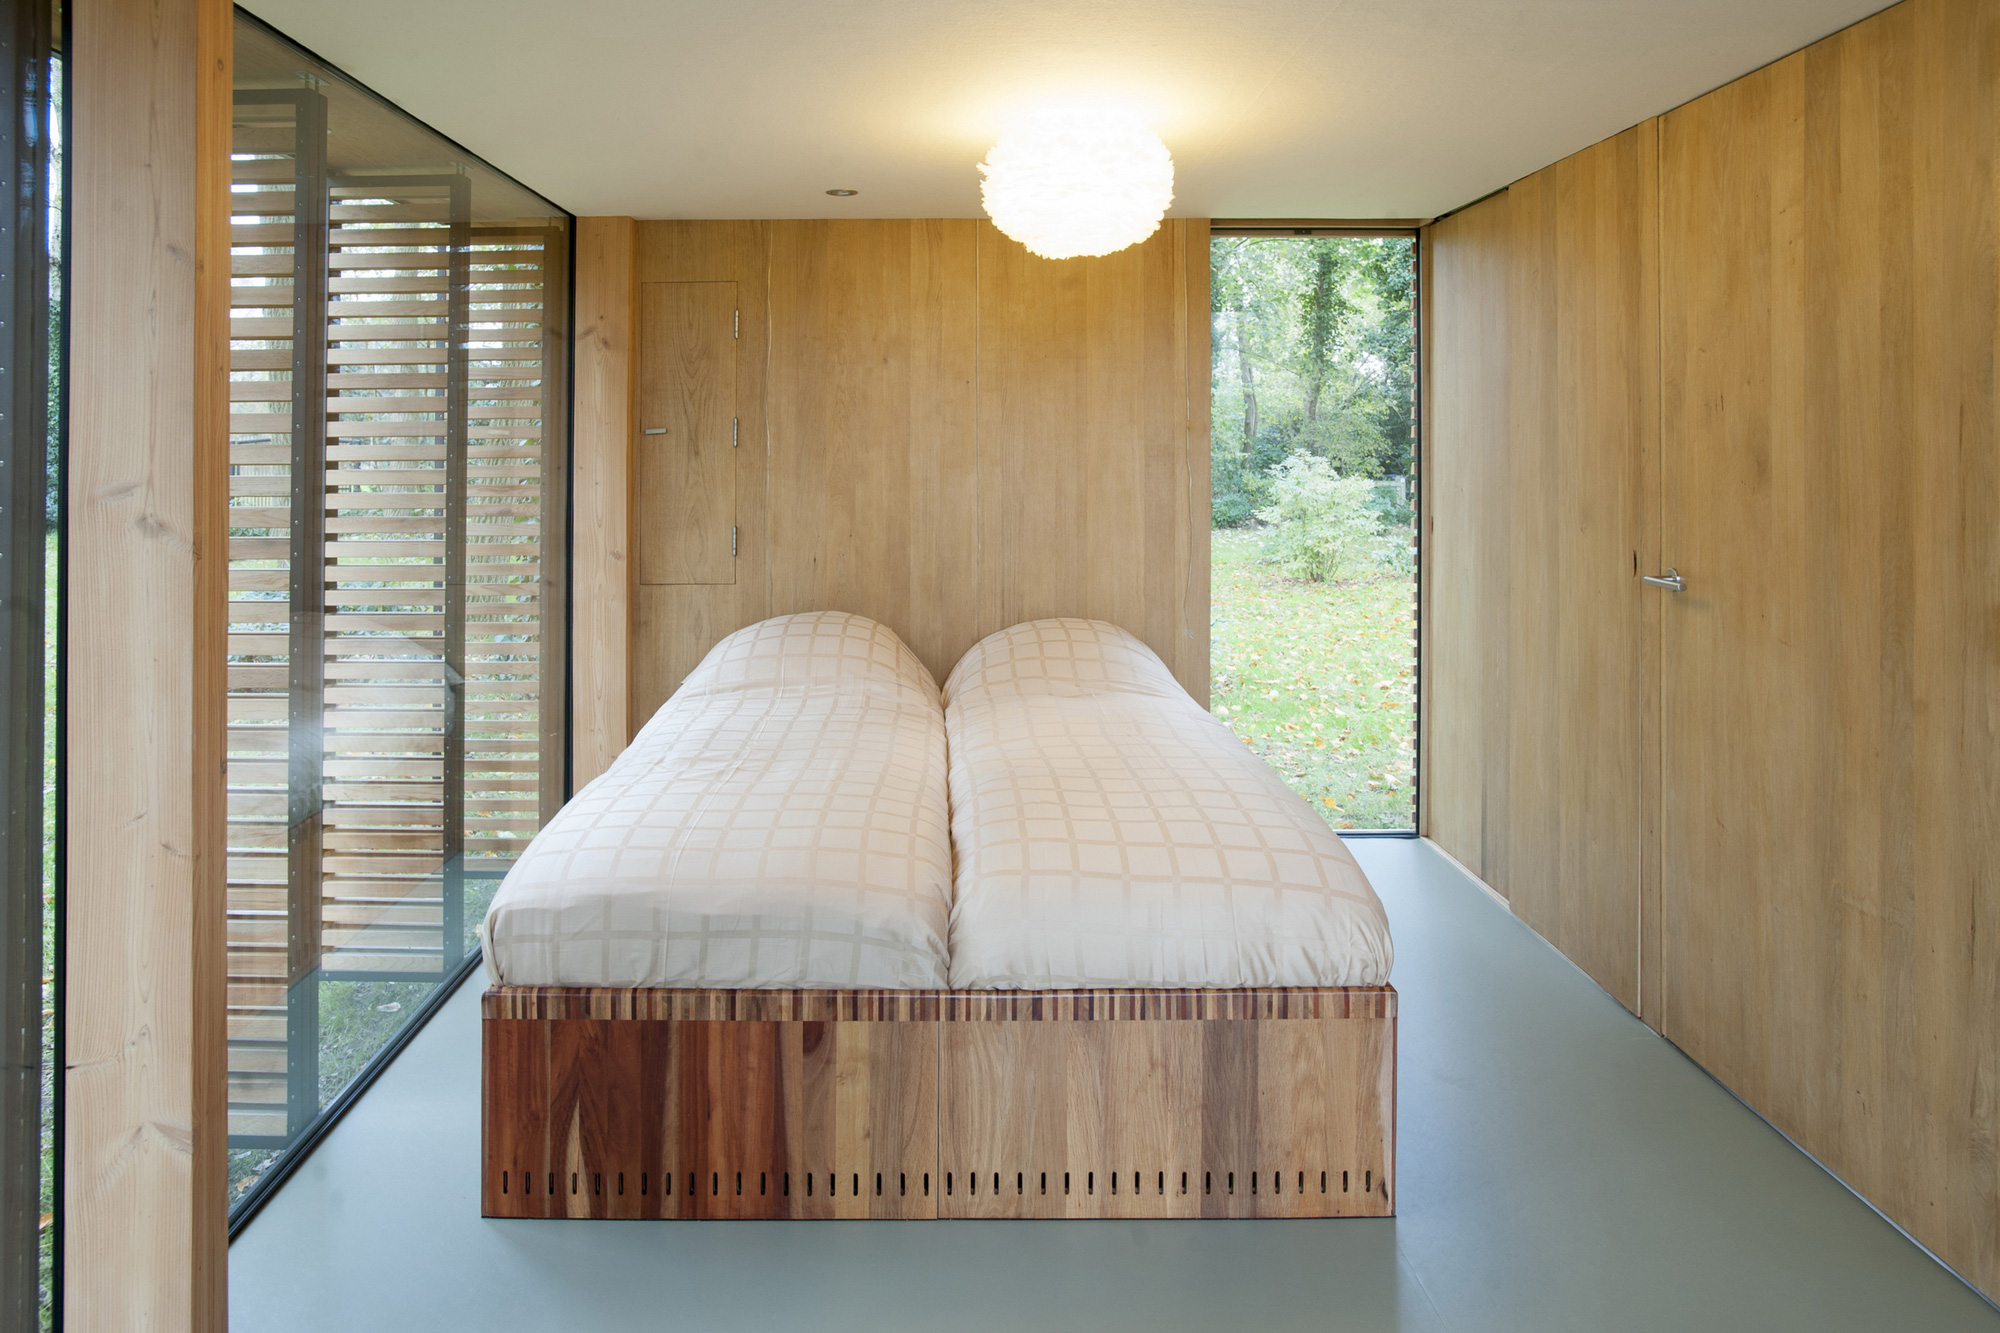 Recreationhouse / Roel van Norel + Zecc Architecten (10)